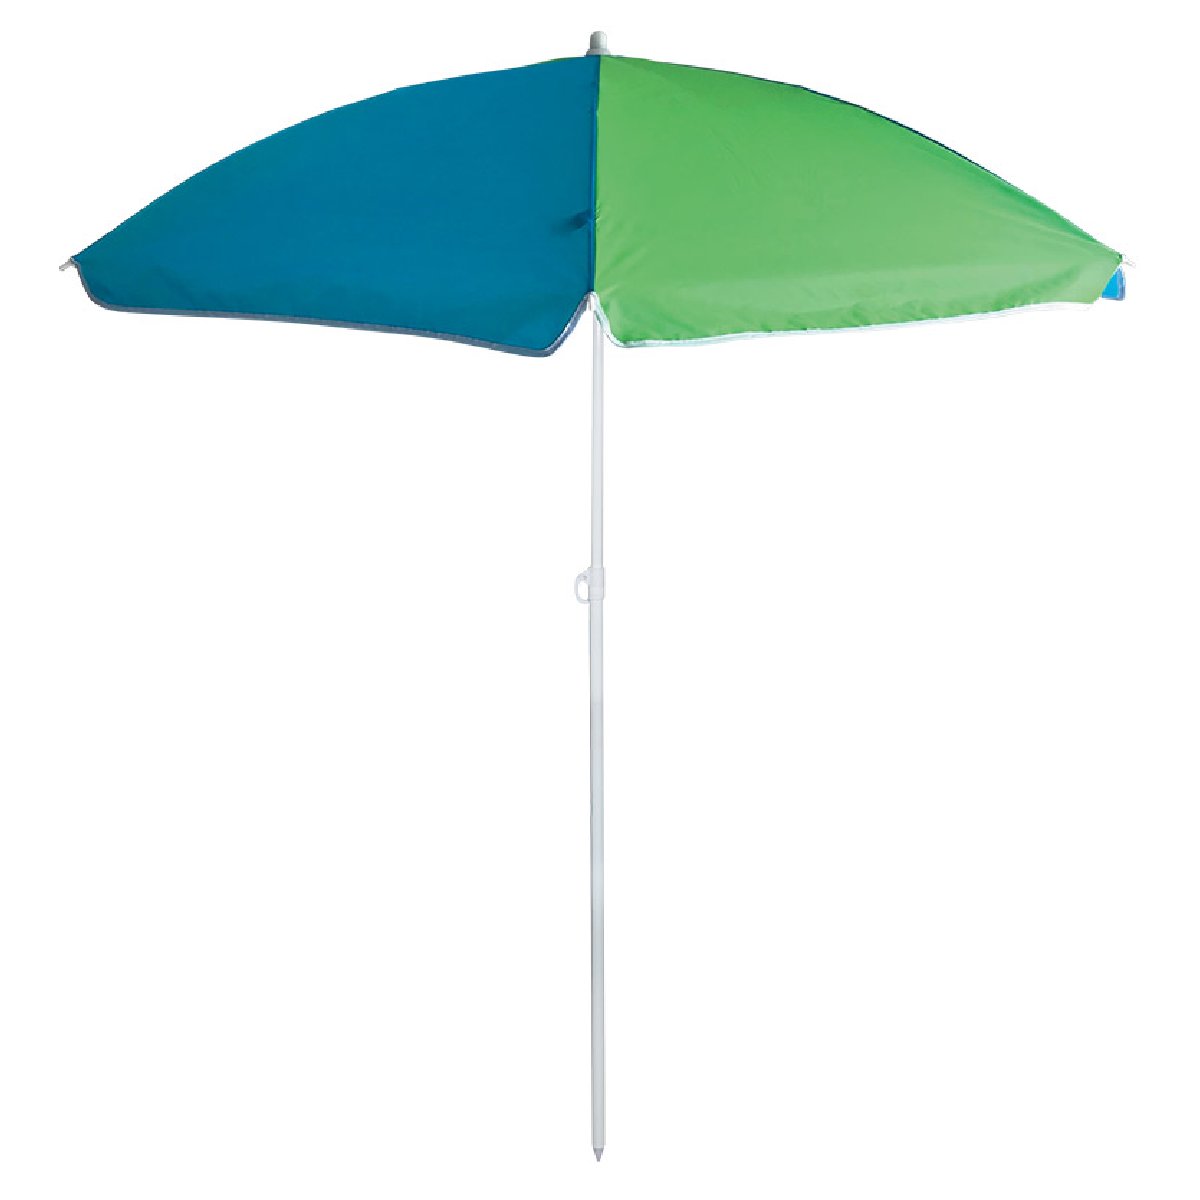 Зонт пляжный Ecos BU-66 диаметр145 см, складная штанга 170 см (999366)Купить